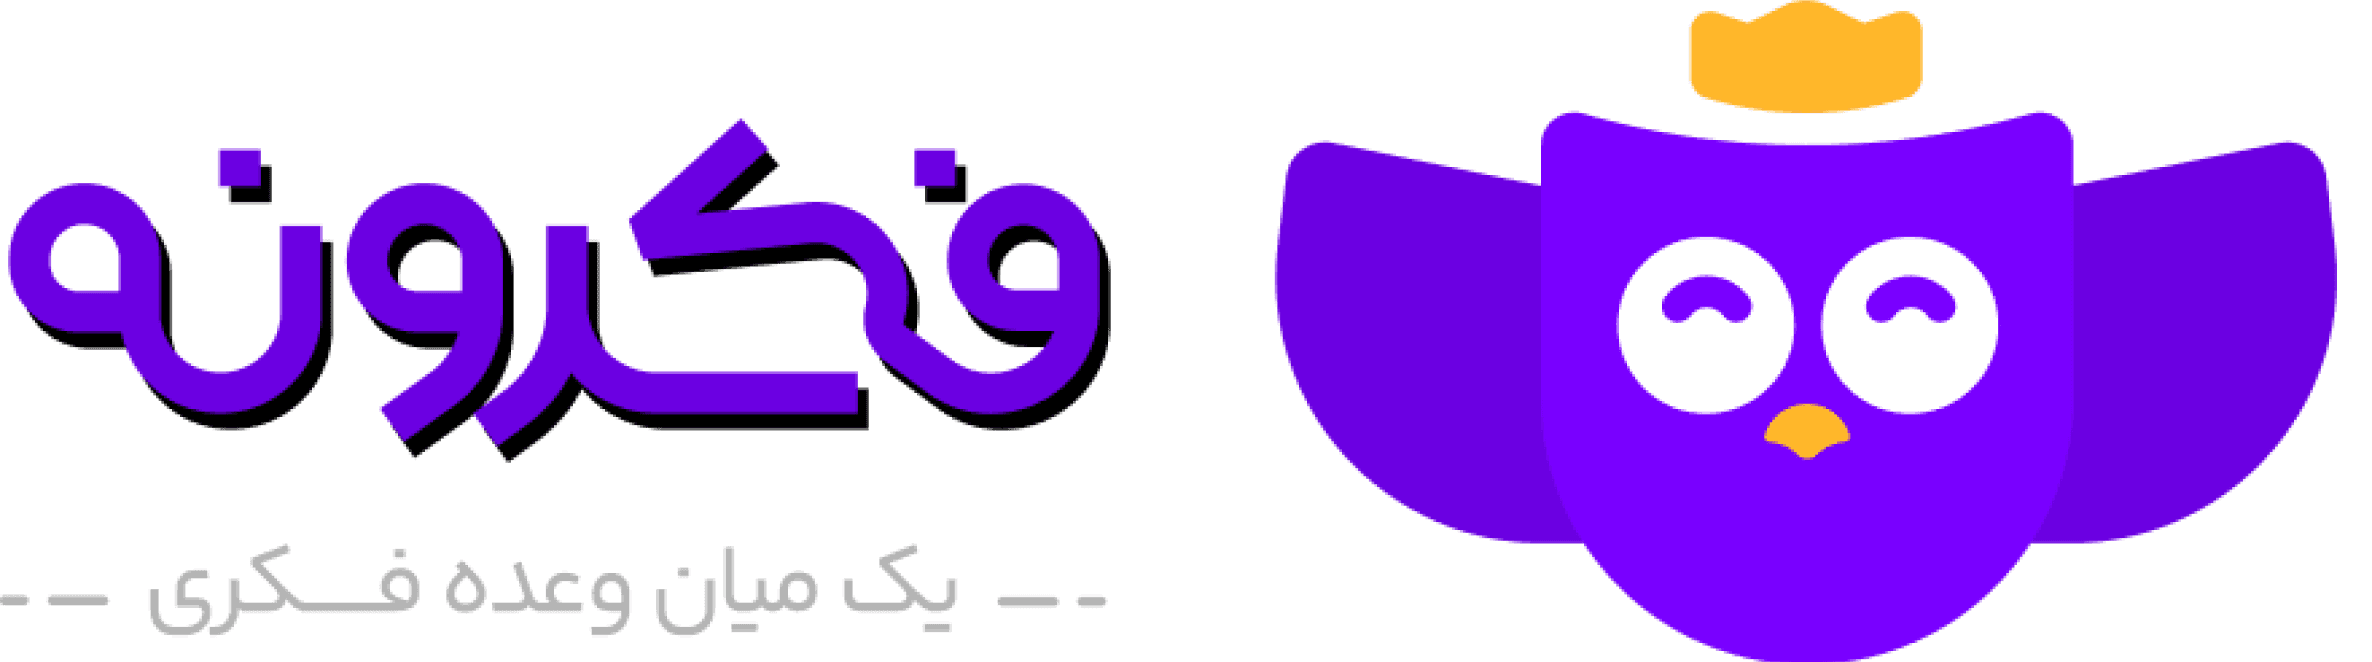 logo_fekrooneh